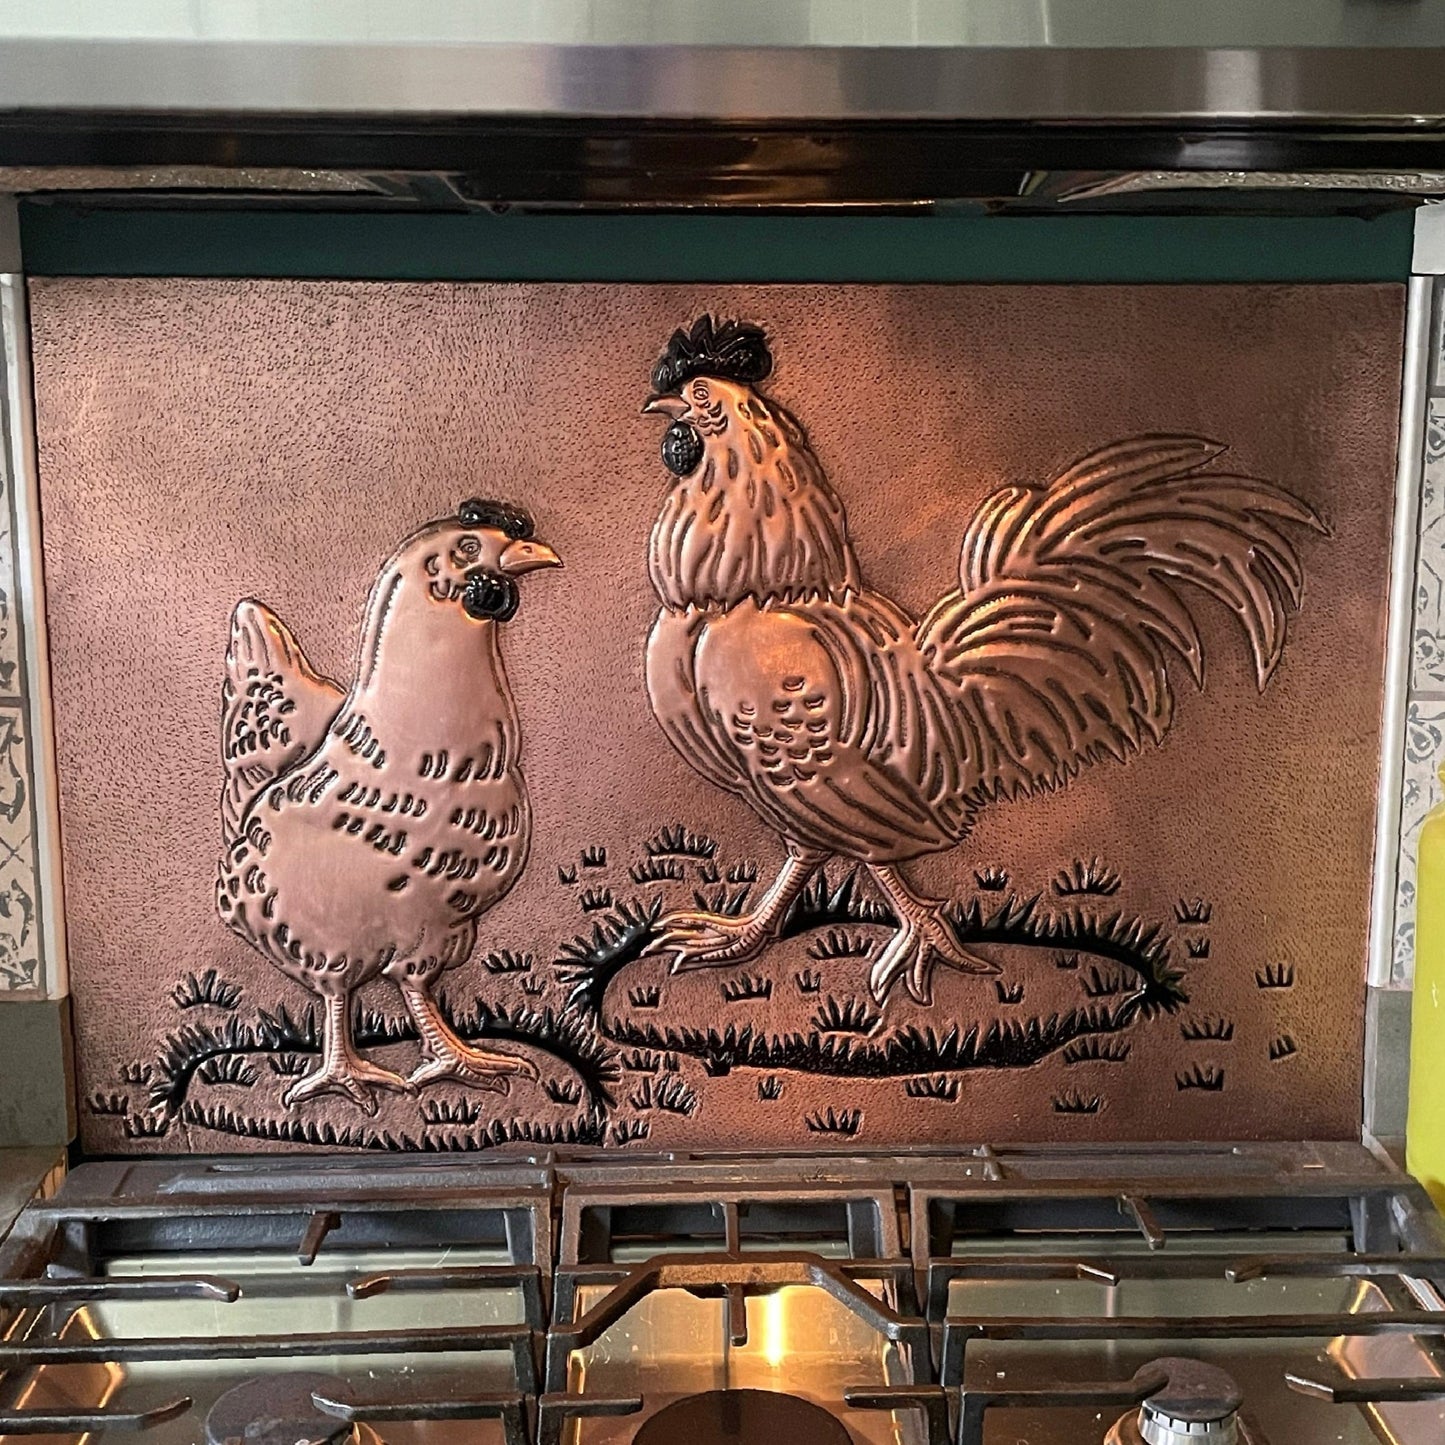 Rooster and Chicken Kitchen Backsplash Tile - 24"x30" Copper&Black